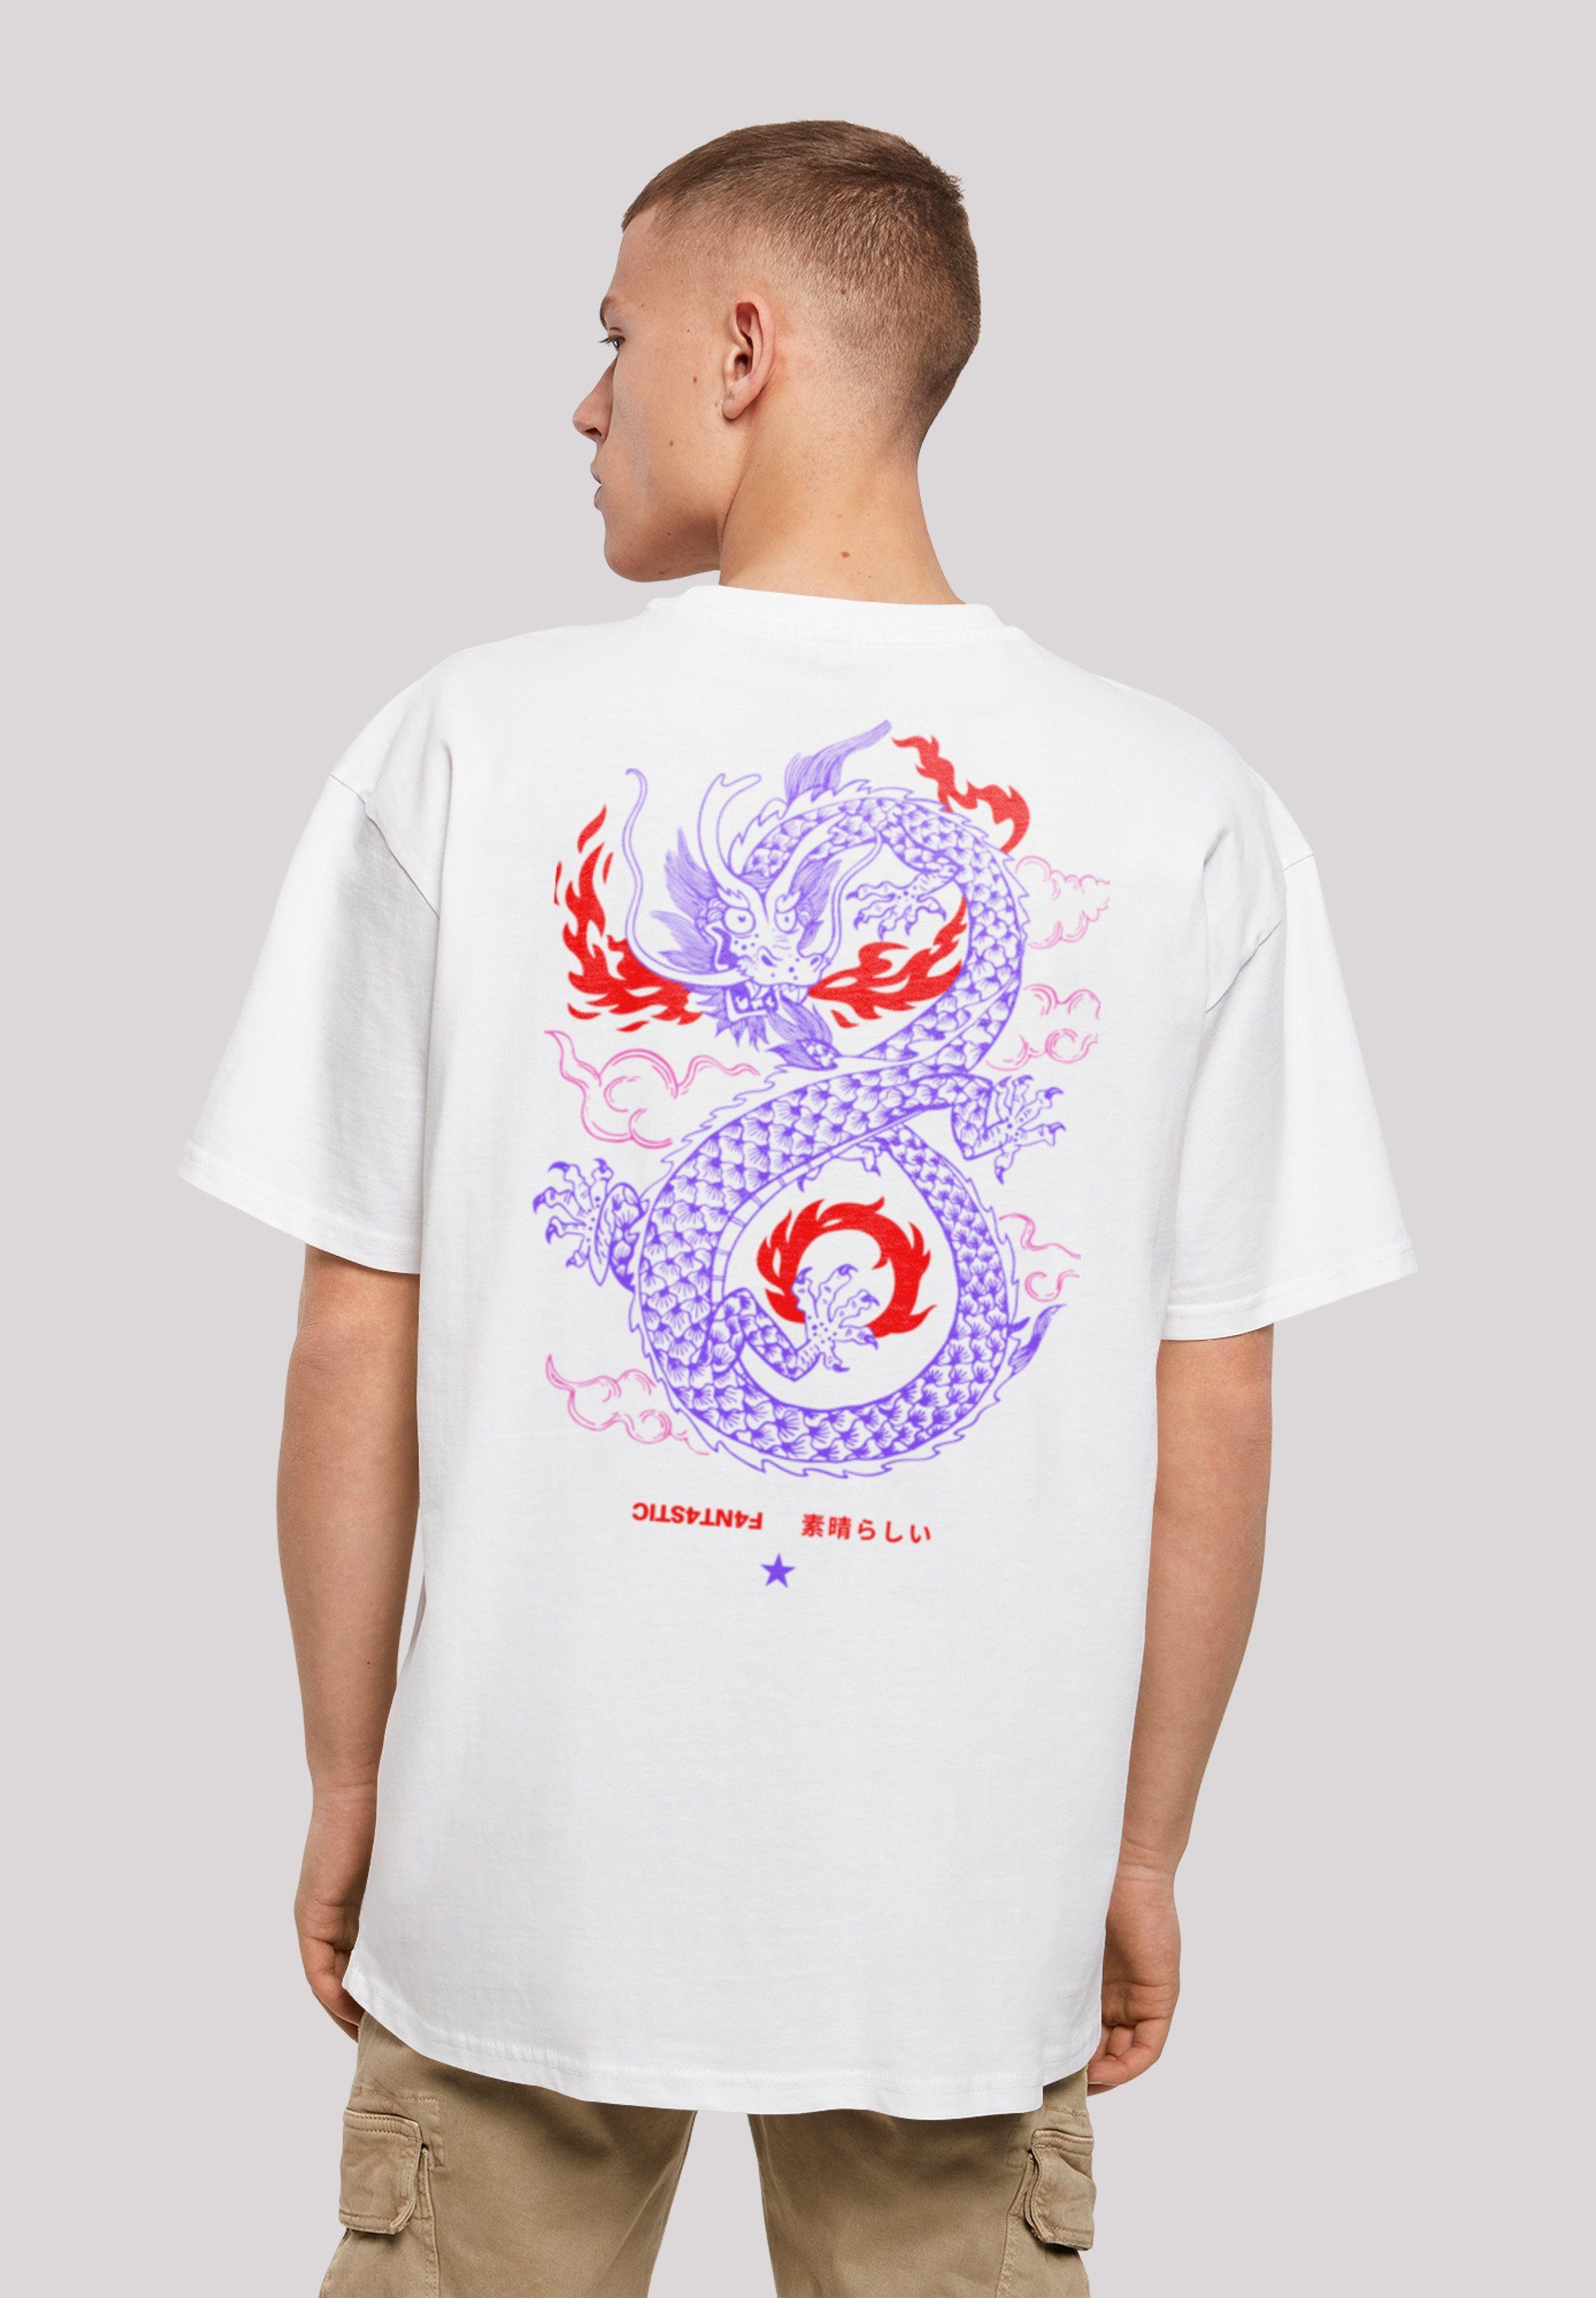 Feuer Drache weiß Print Japan F4NT4STIC T-Shirt